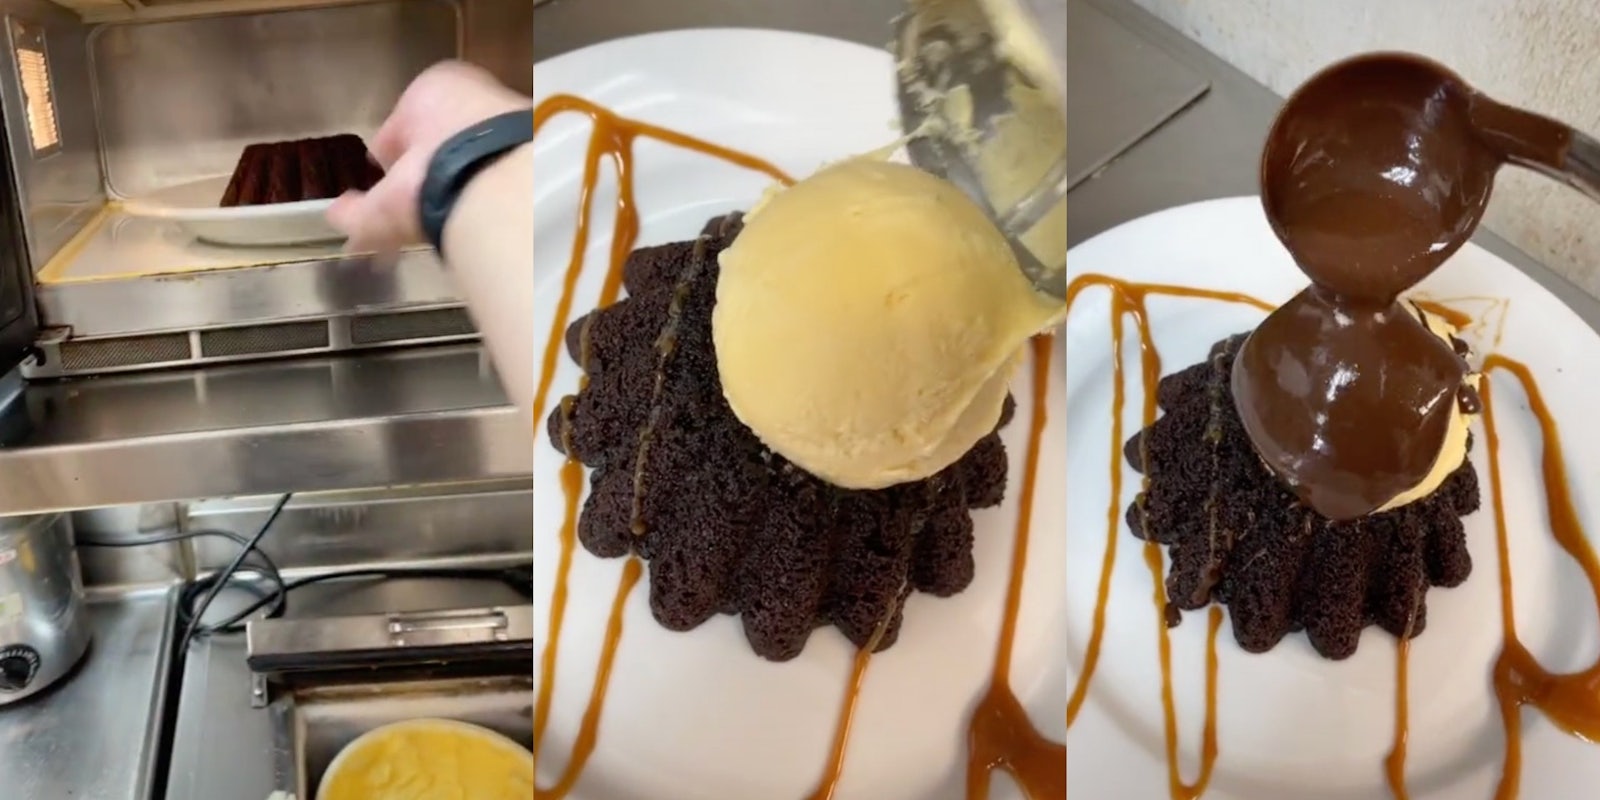 Chilis employee shows how to make molten chocolate cake on TikTok